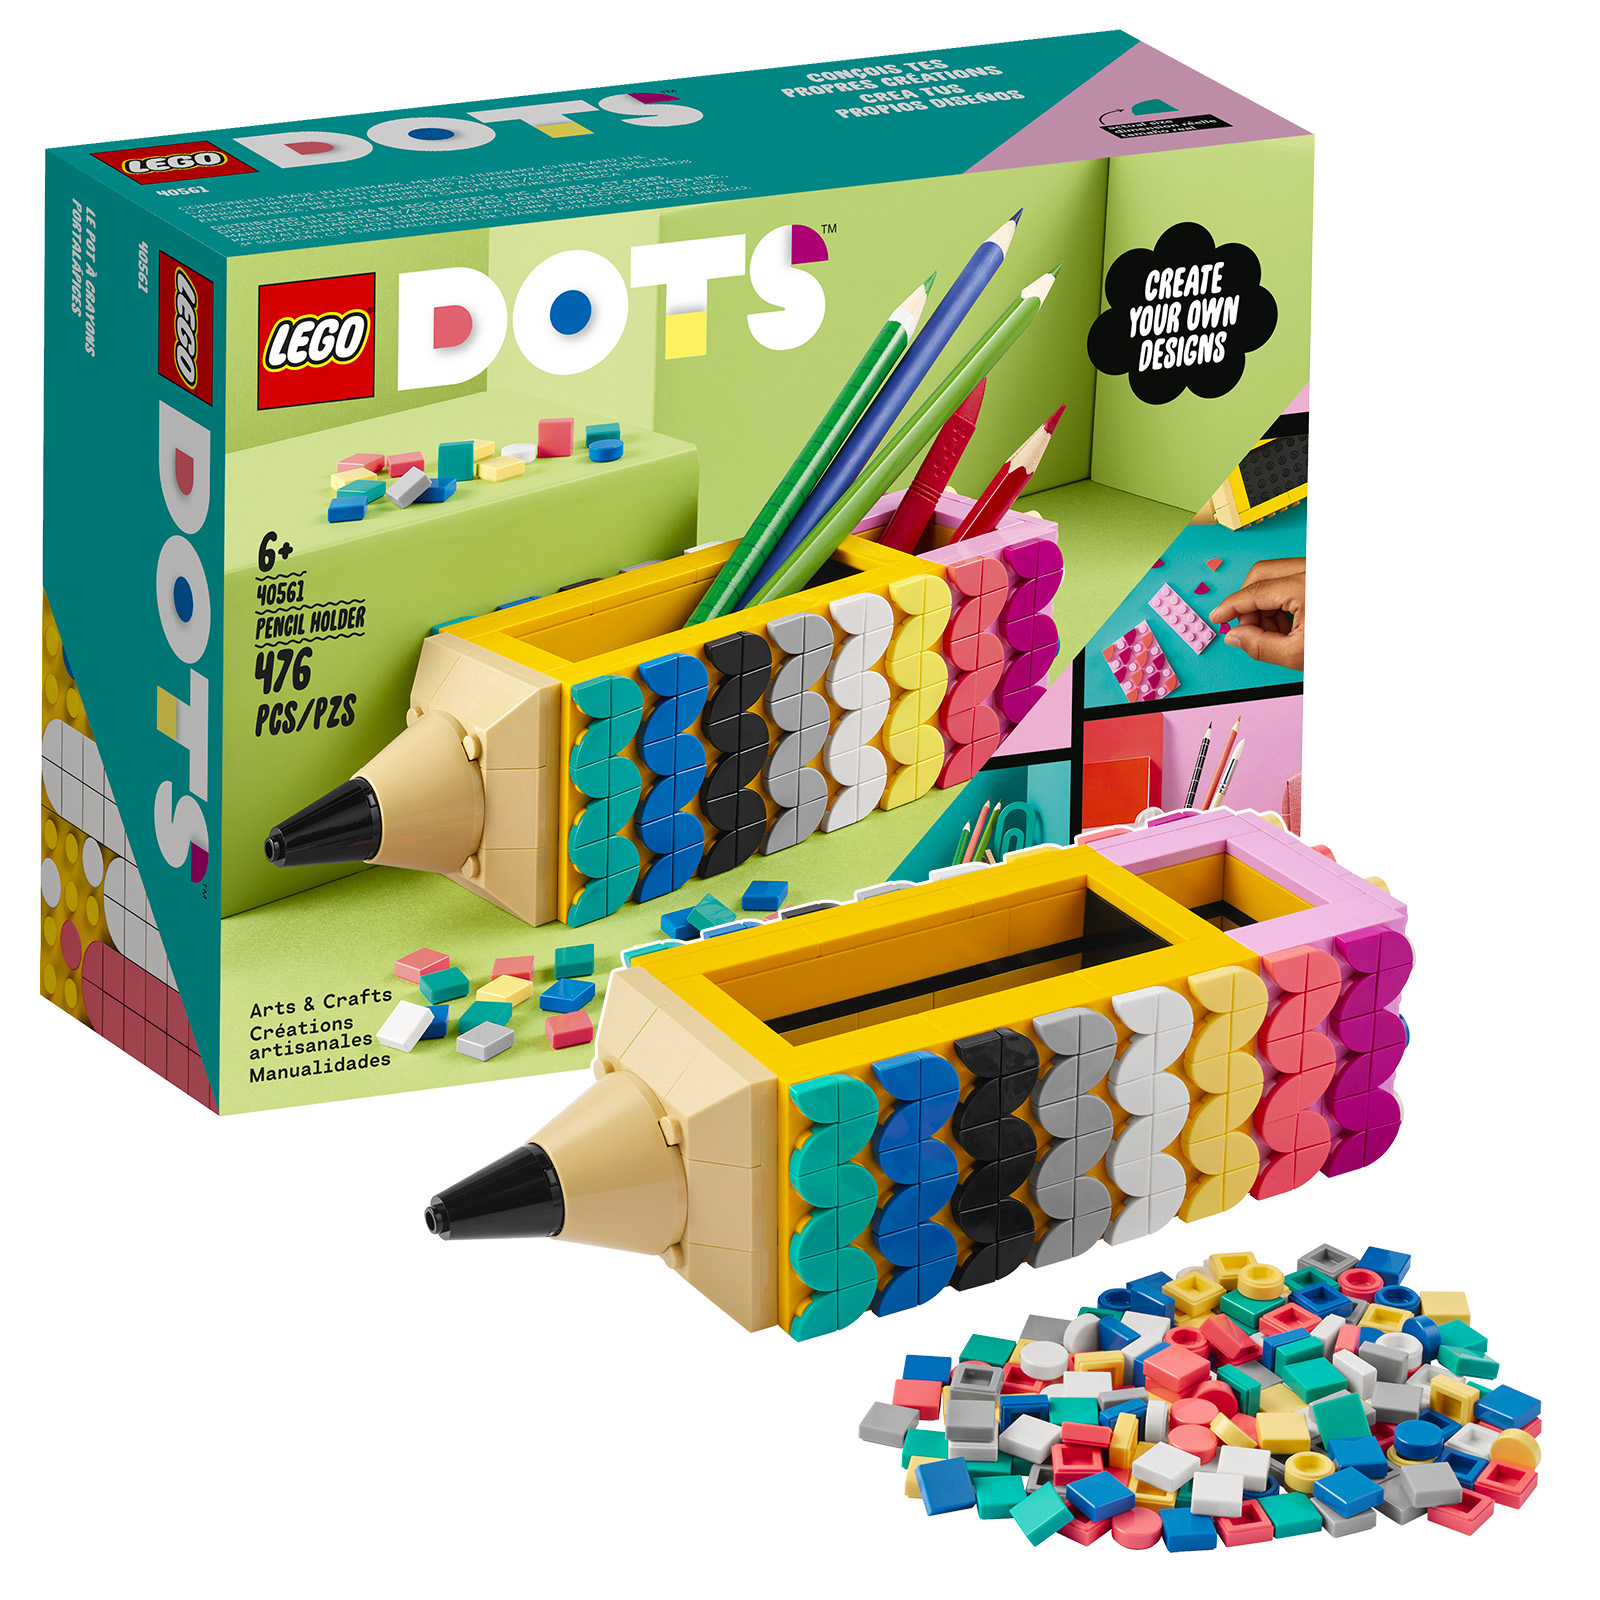 Na LEGO Shop: conjunto de porta-lápis DOTS 40561 grátis e polybag Super Mario 30509 Yellow Yoshi Fruit Tree